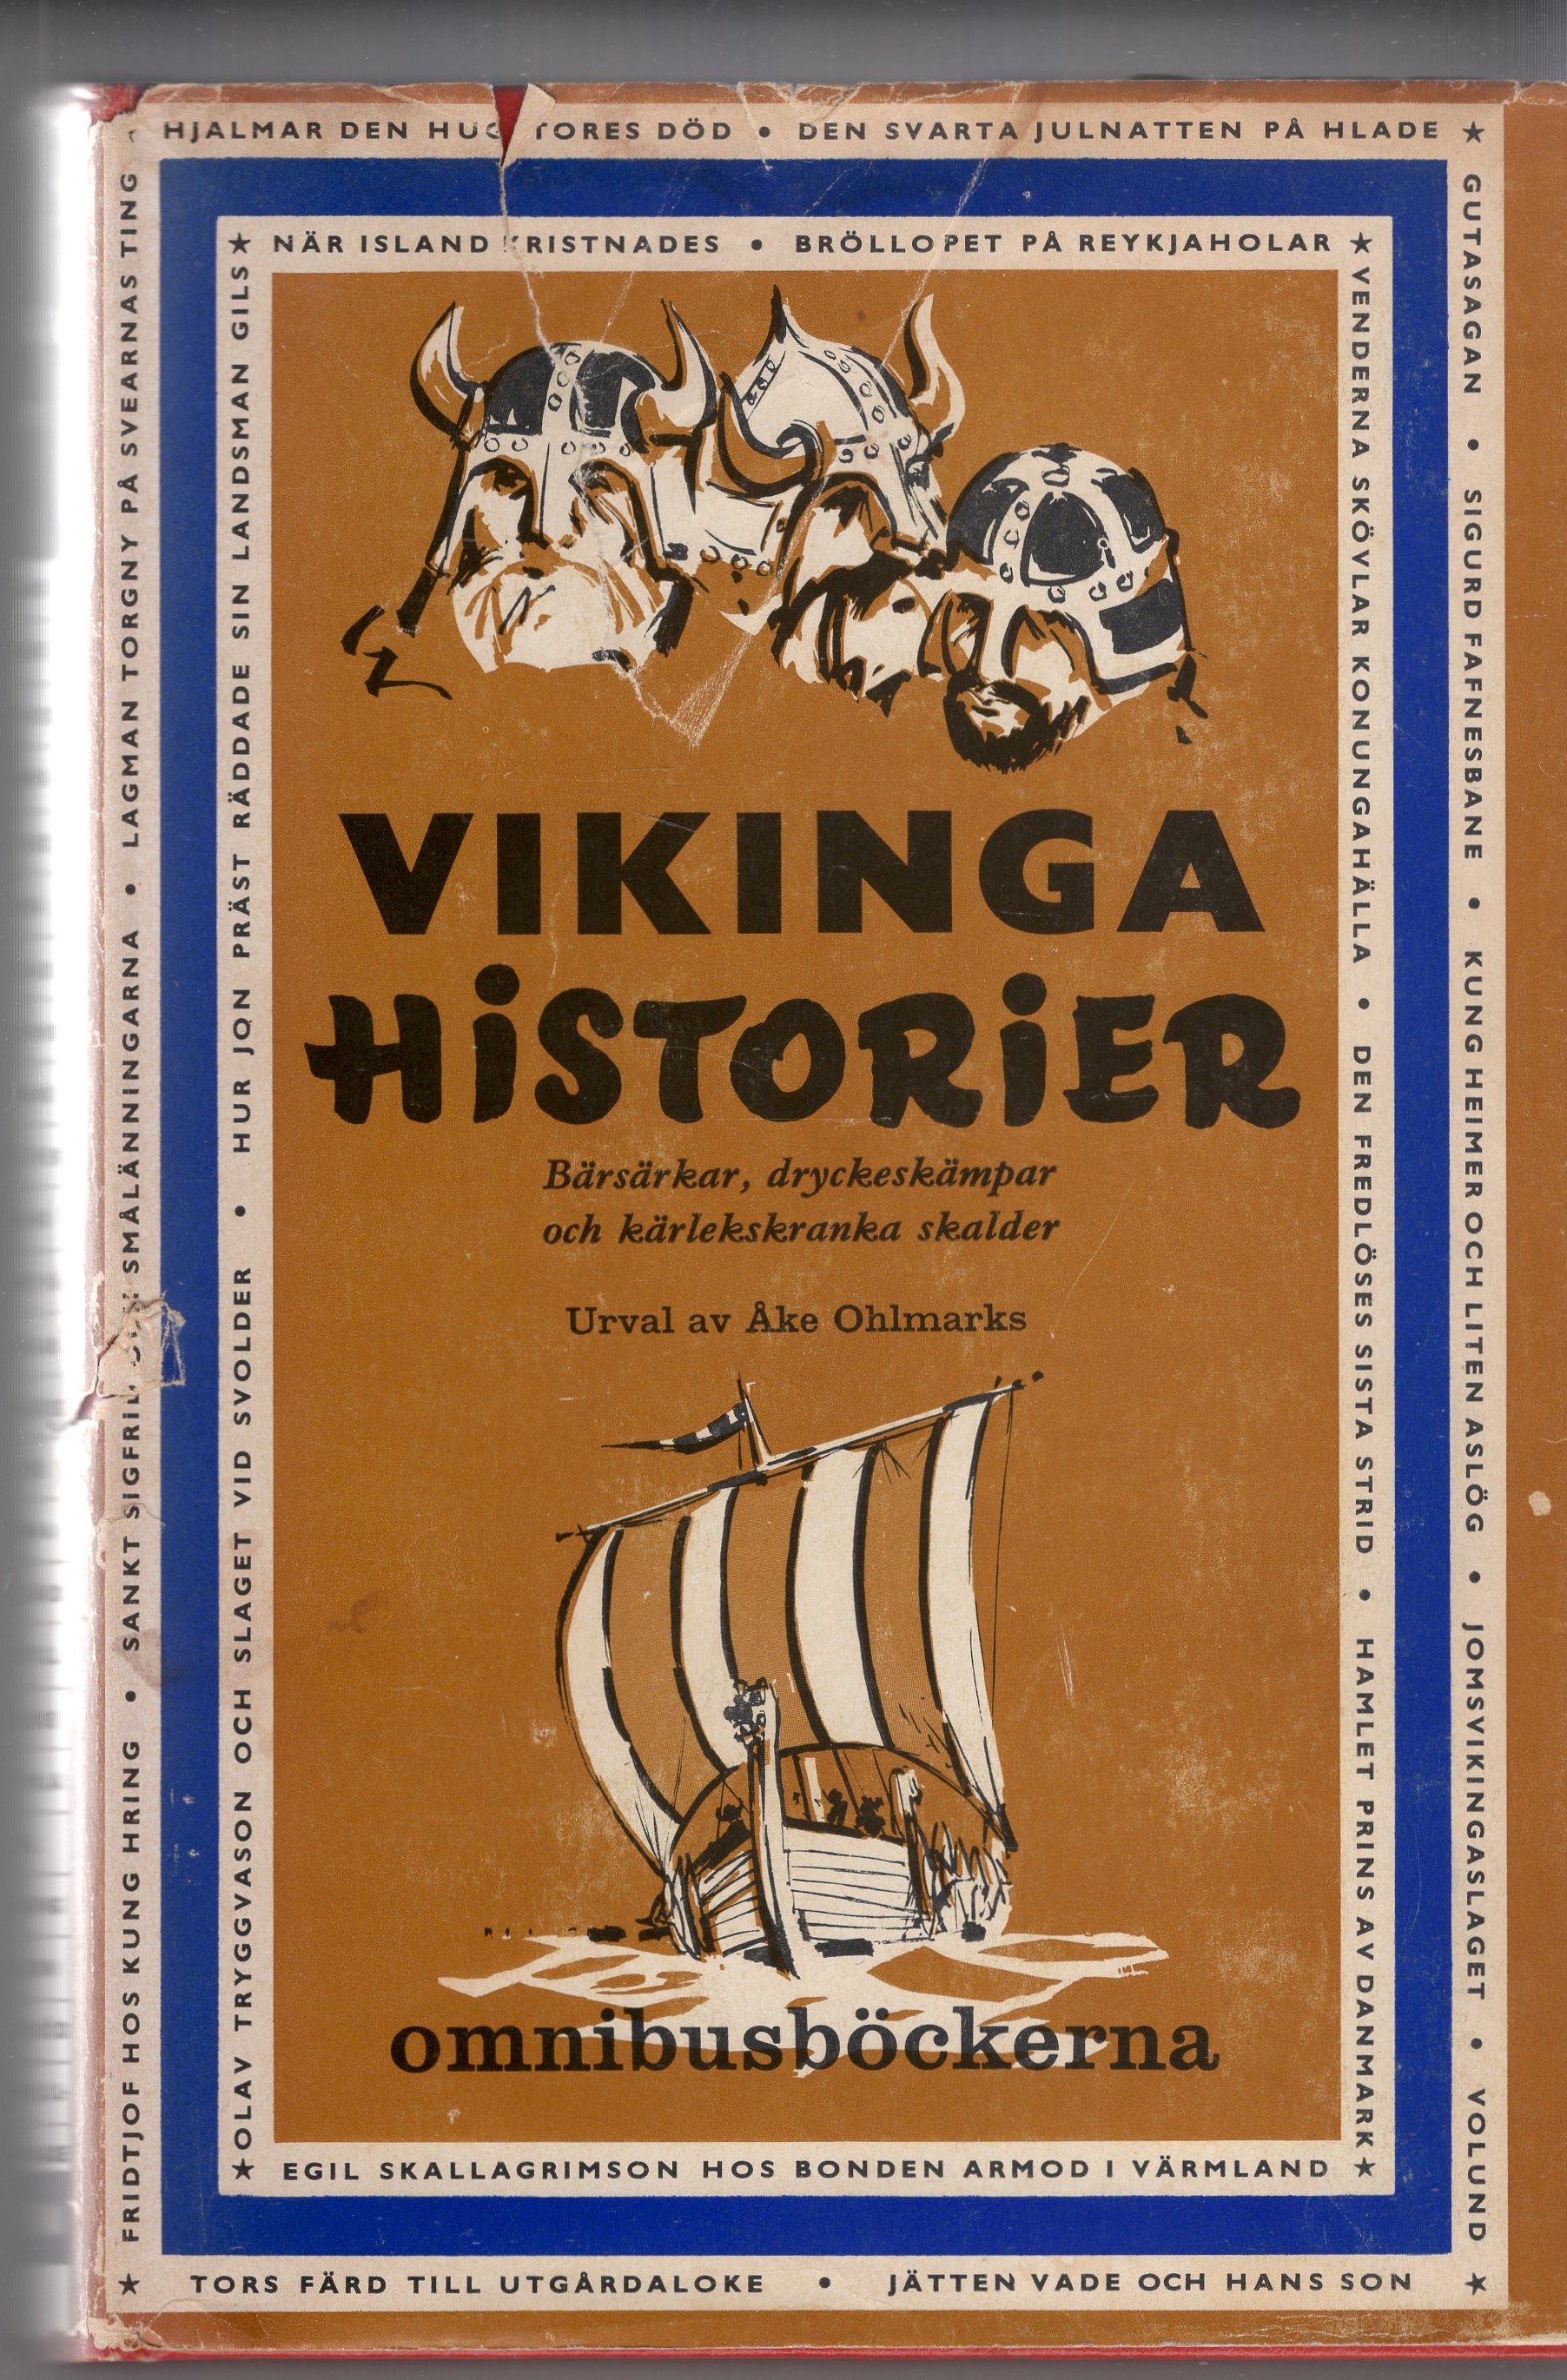 Ohlmarks, Ake (translation) - Vikingahistorier, Omnibusbckerna 